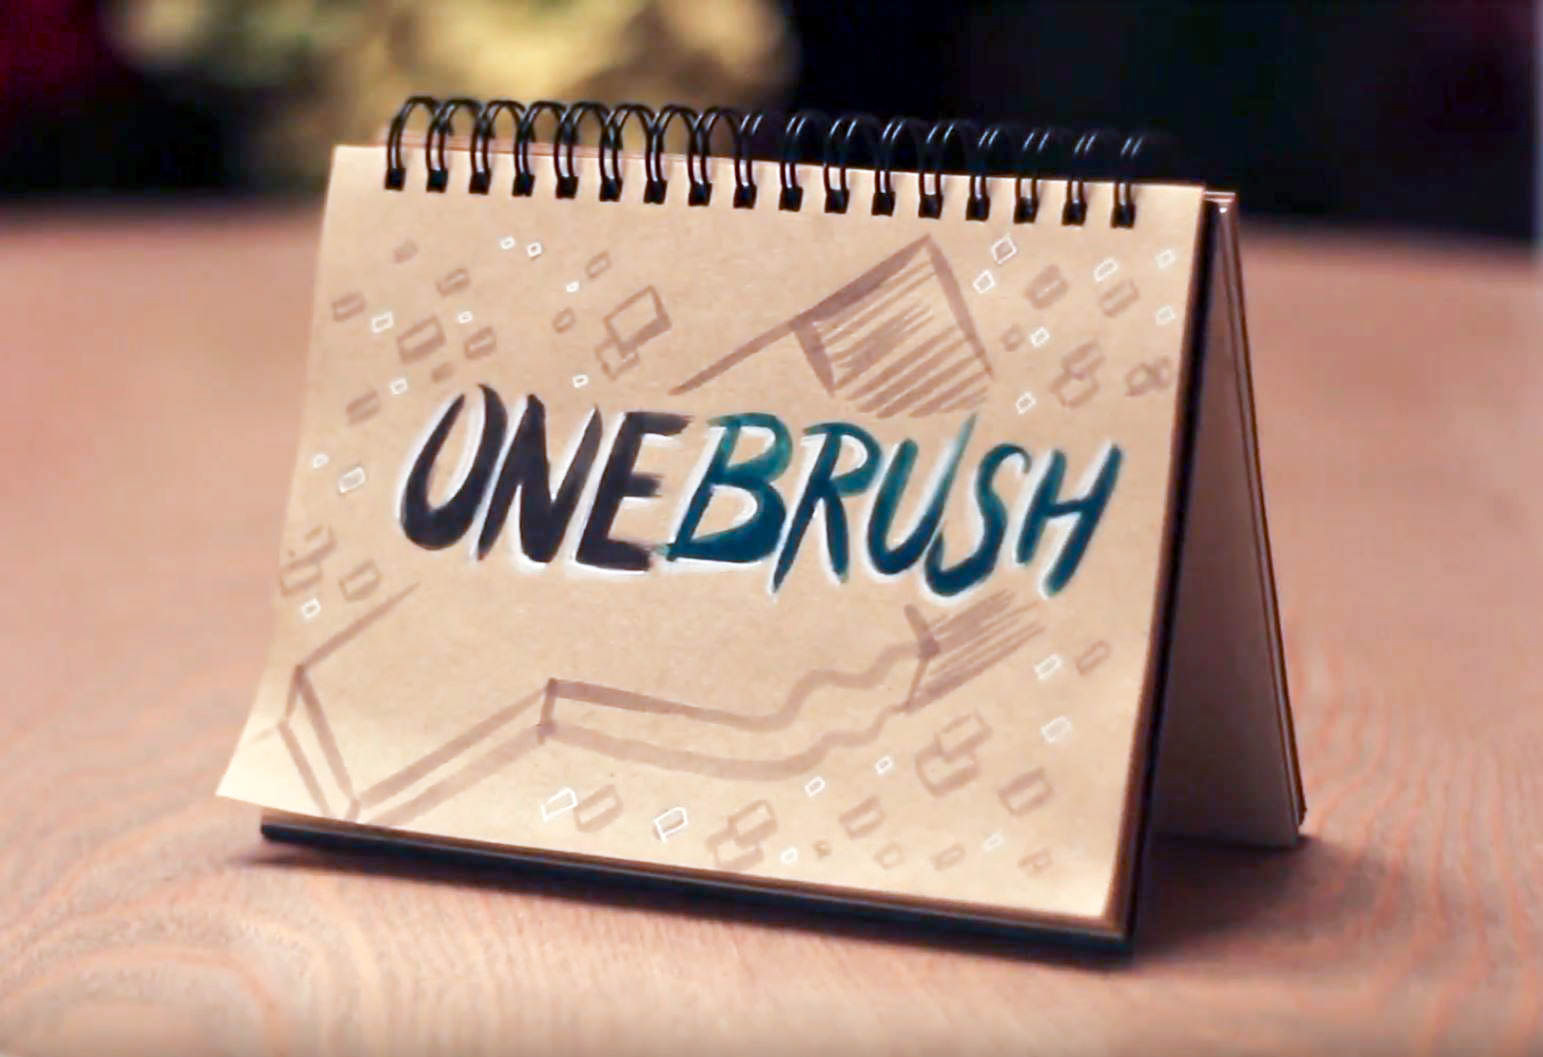 Onebrush